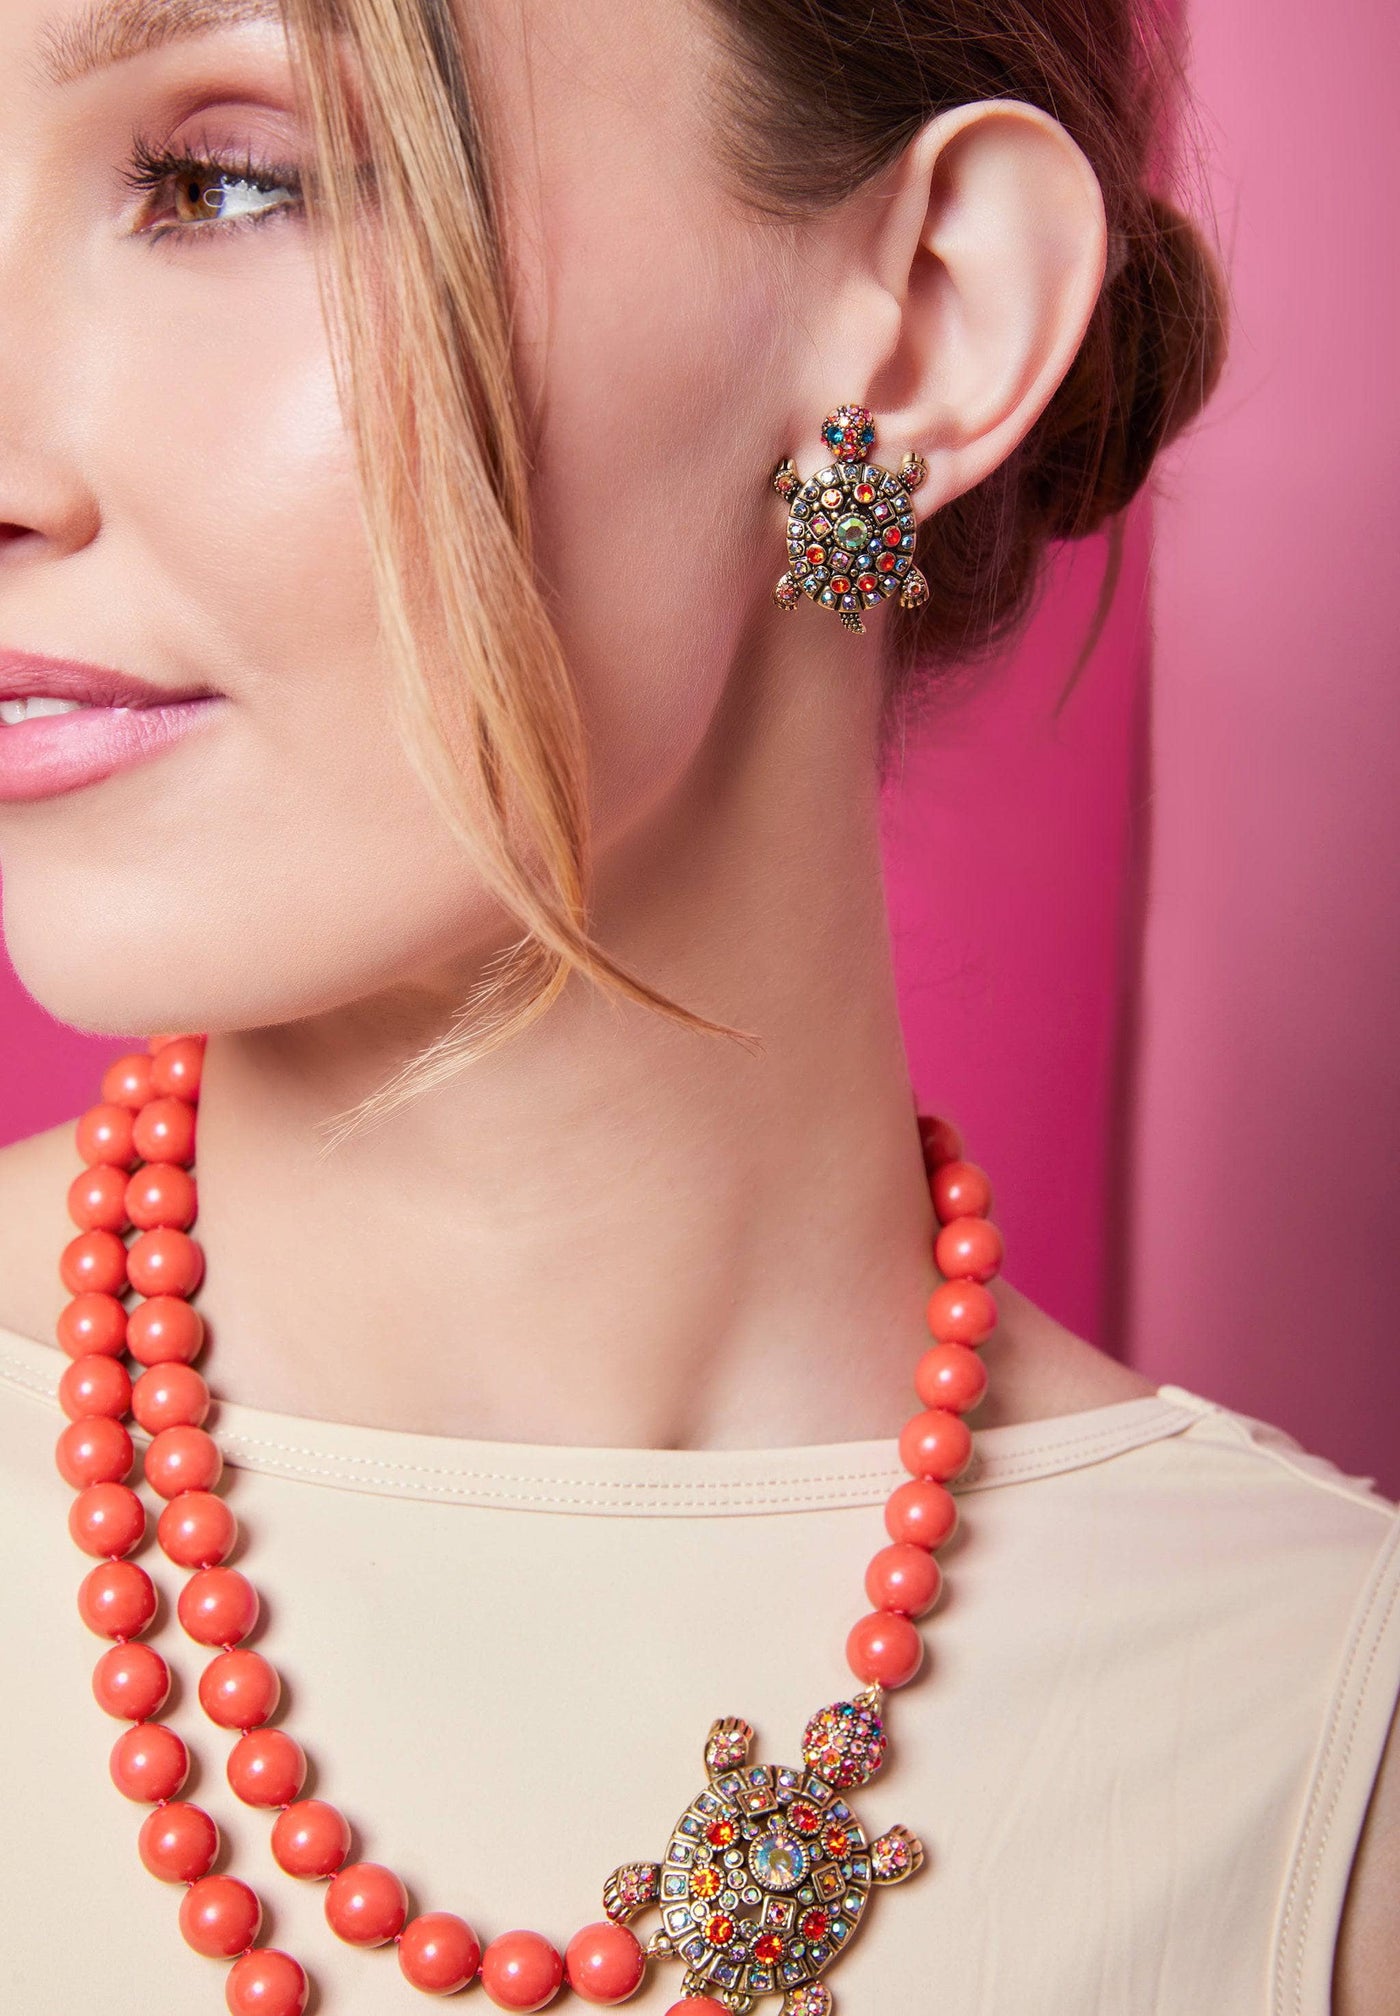 Heidi Daus®"Simply Irresistible Turtle" Crystal Turtle Button Earrings